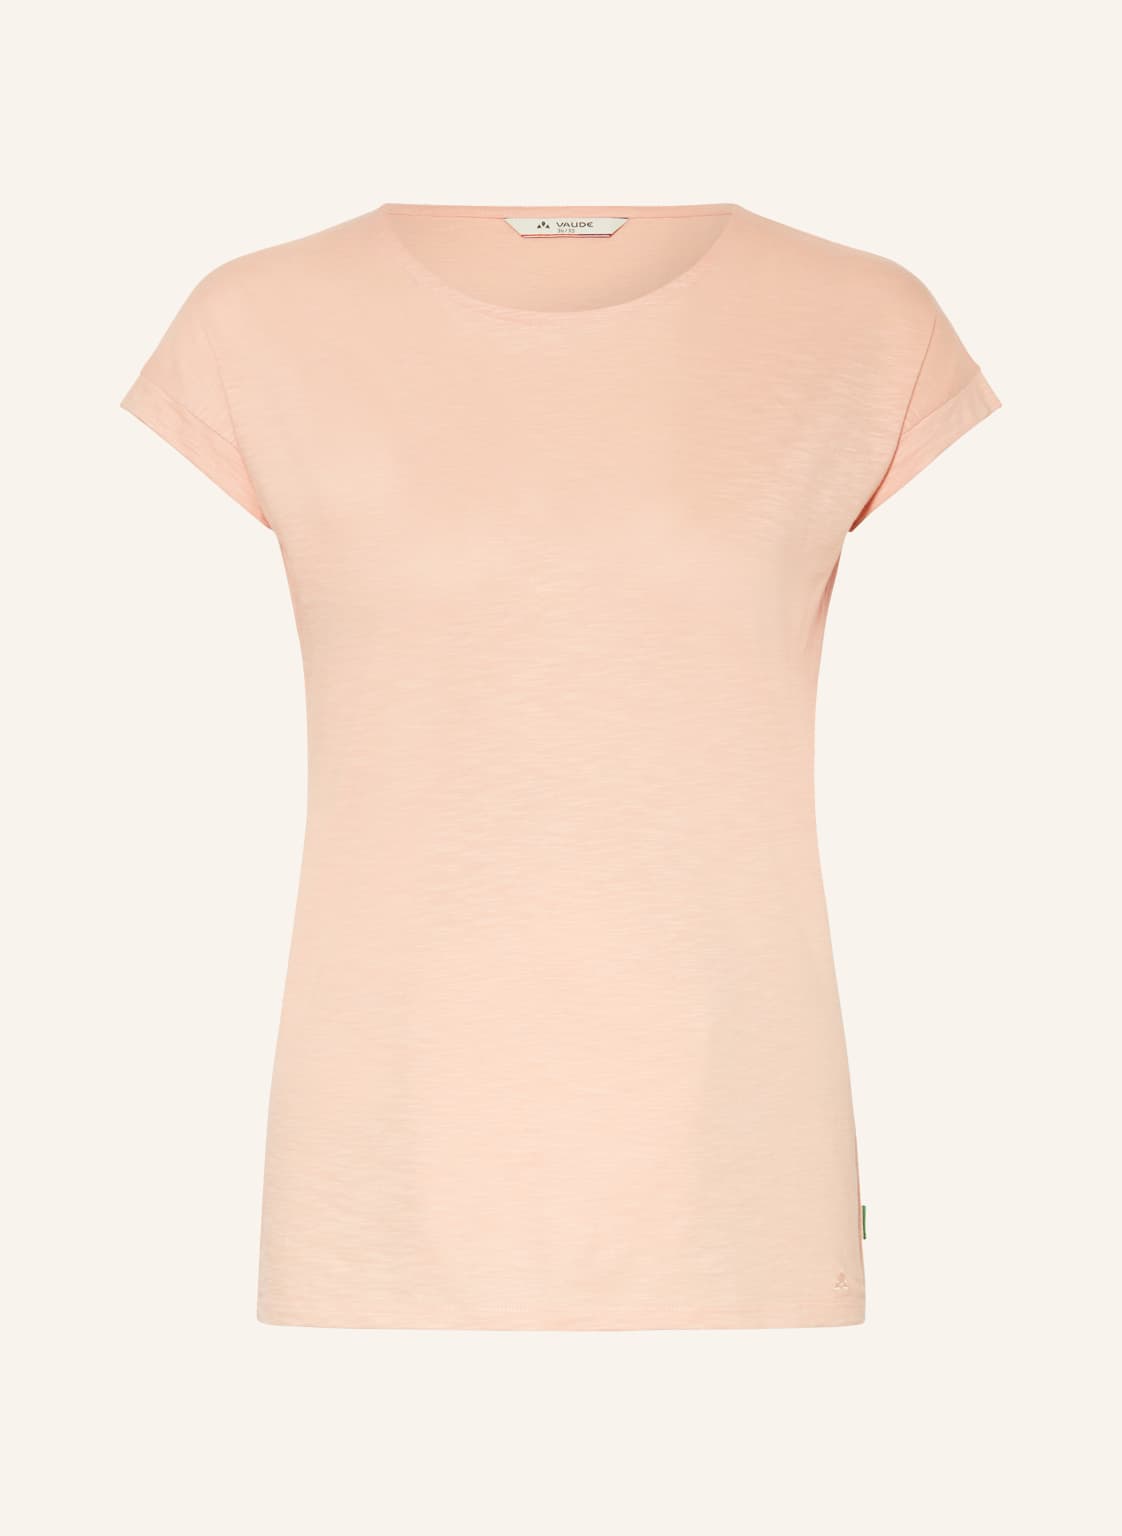 Vaude T-Shirt Moja Iv rosa von Vaude